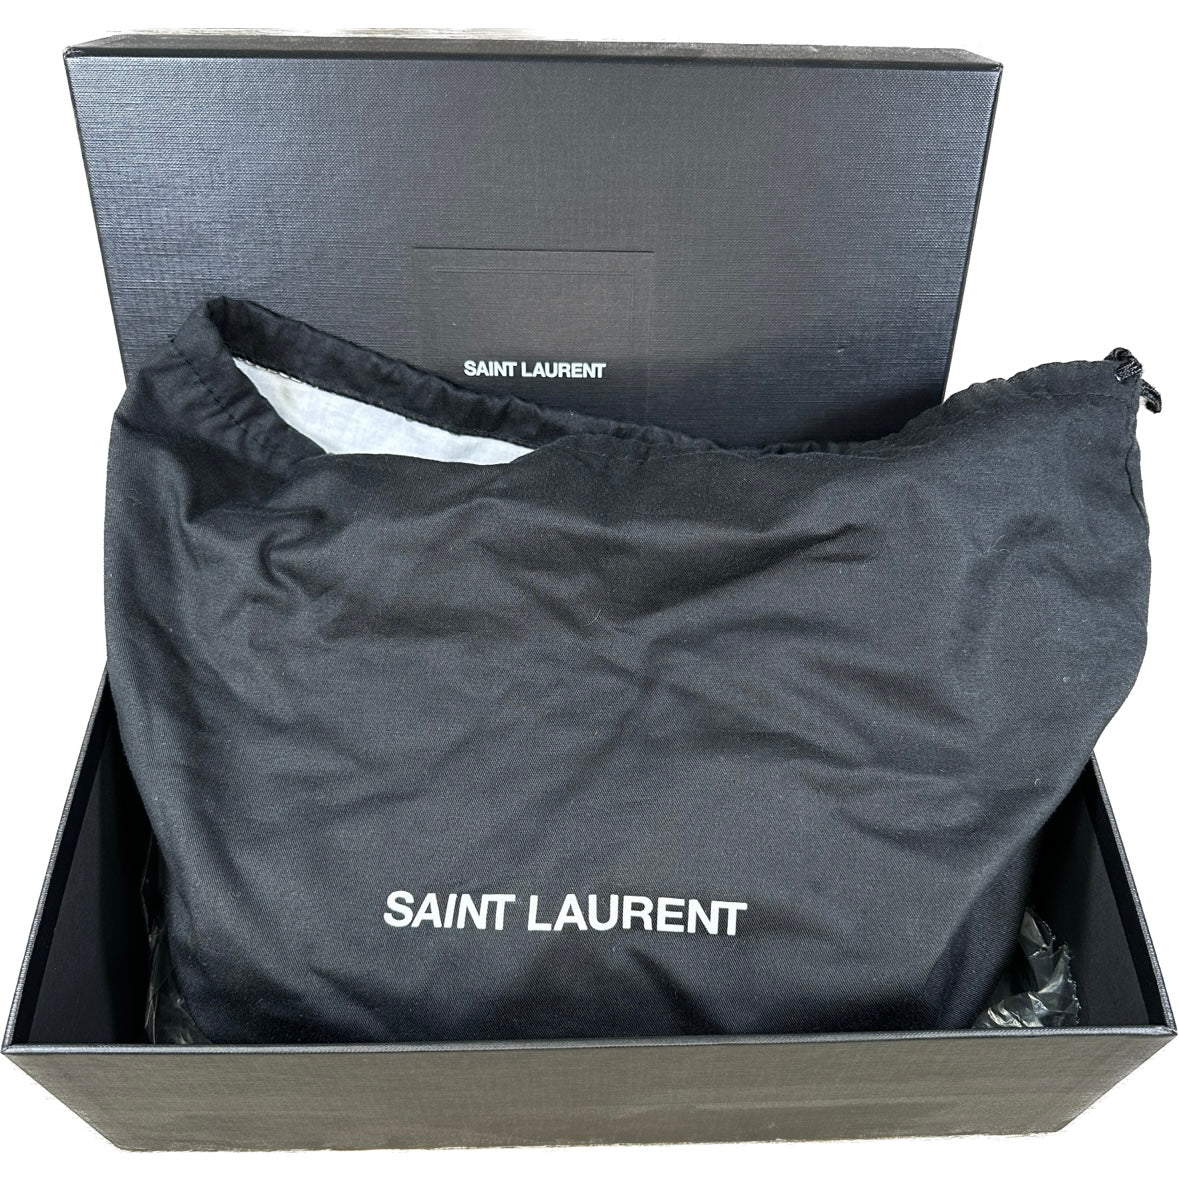 Saint Laurent, Bags, Saint Laurent Dust Bag And Box